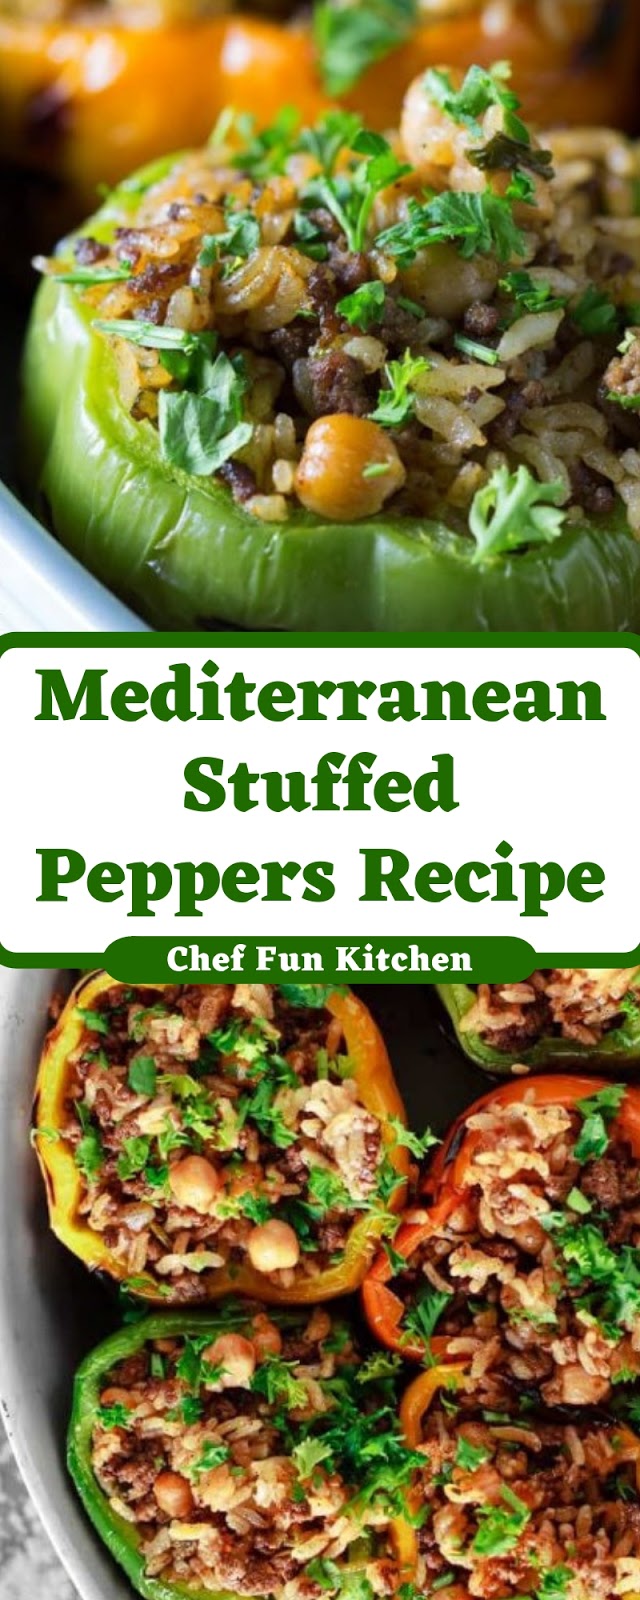 Mediterranean Stuffed Peppers Recipe